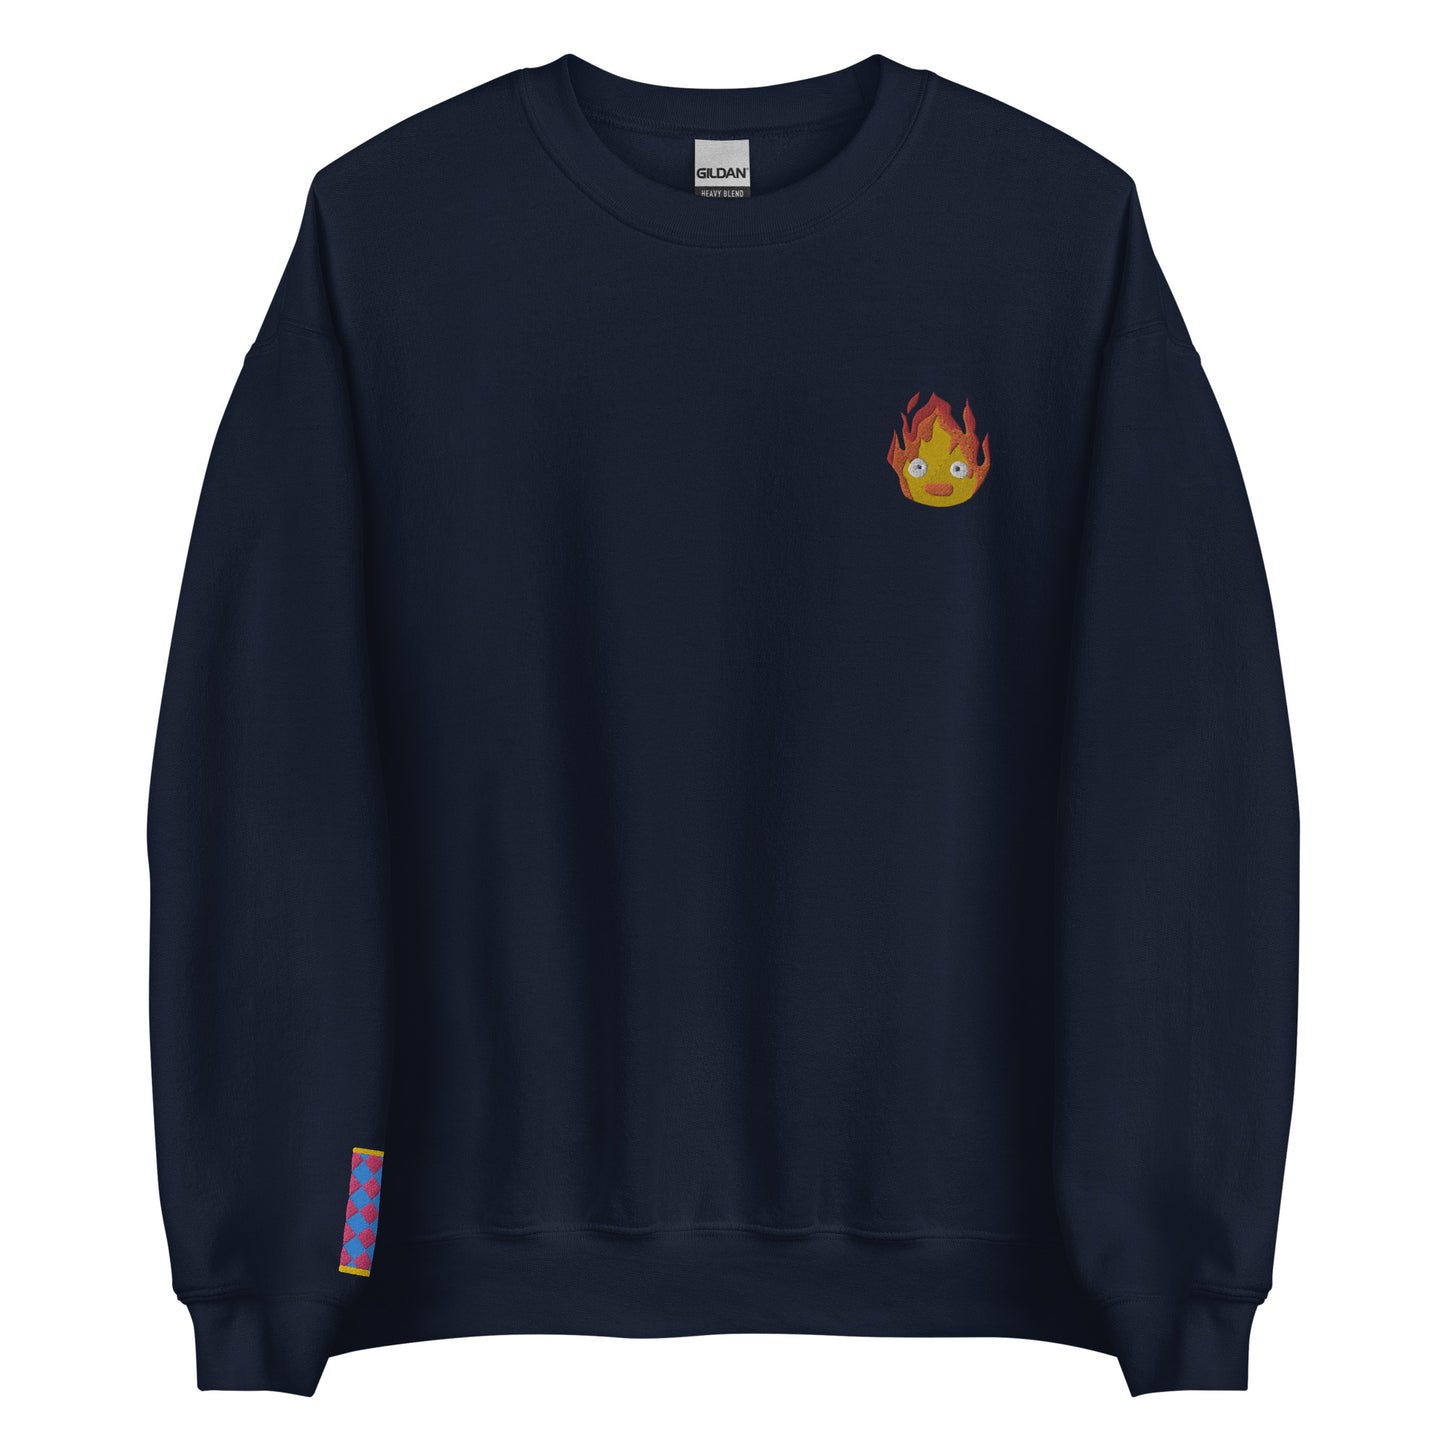 Howl Fire Sweatshirt crew neck sweater